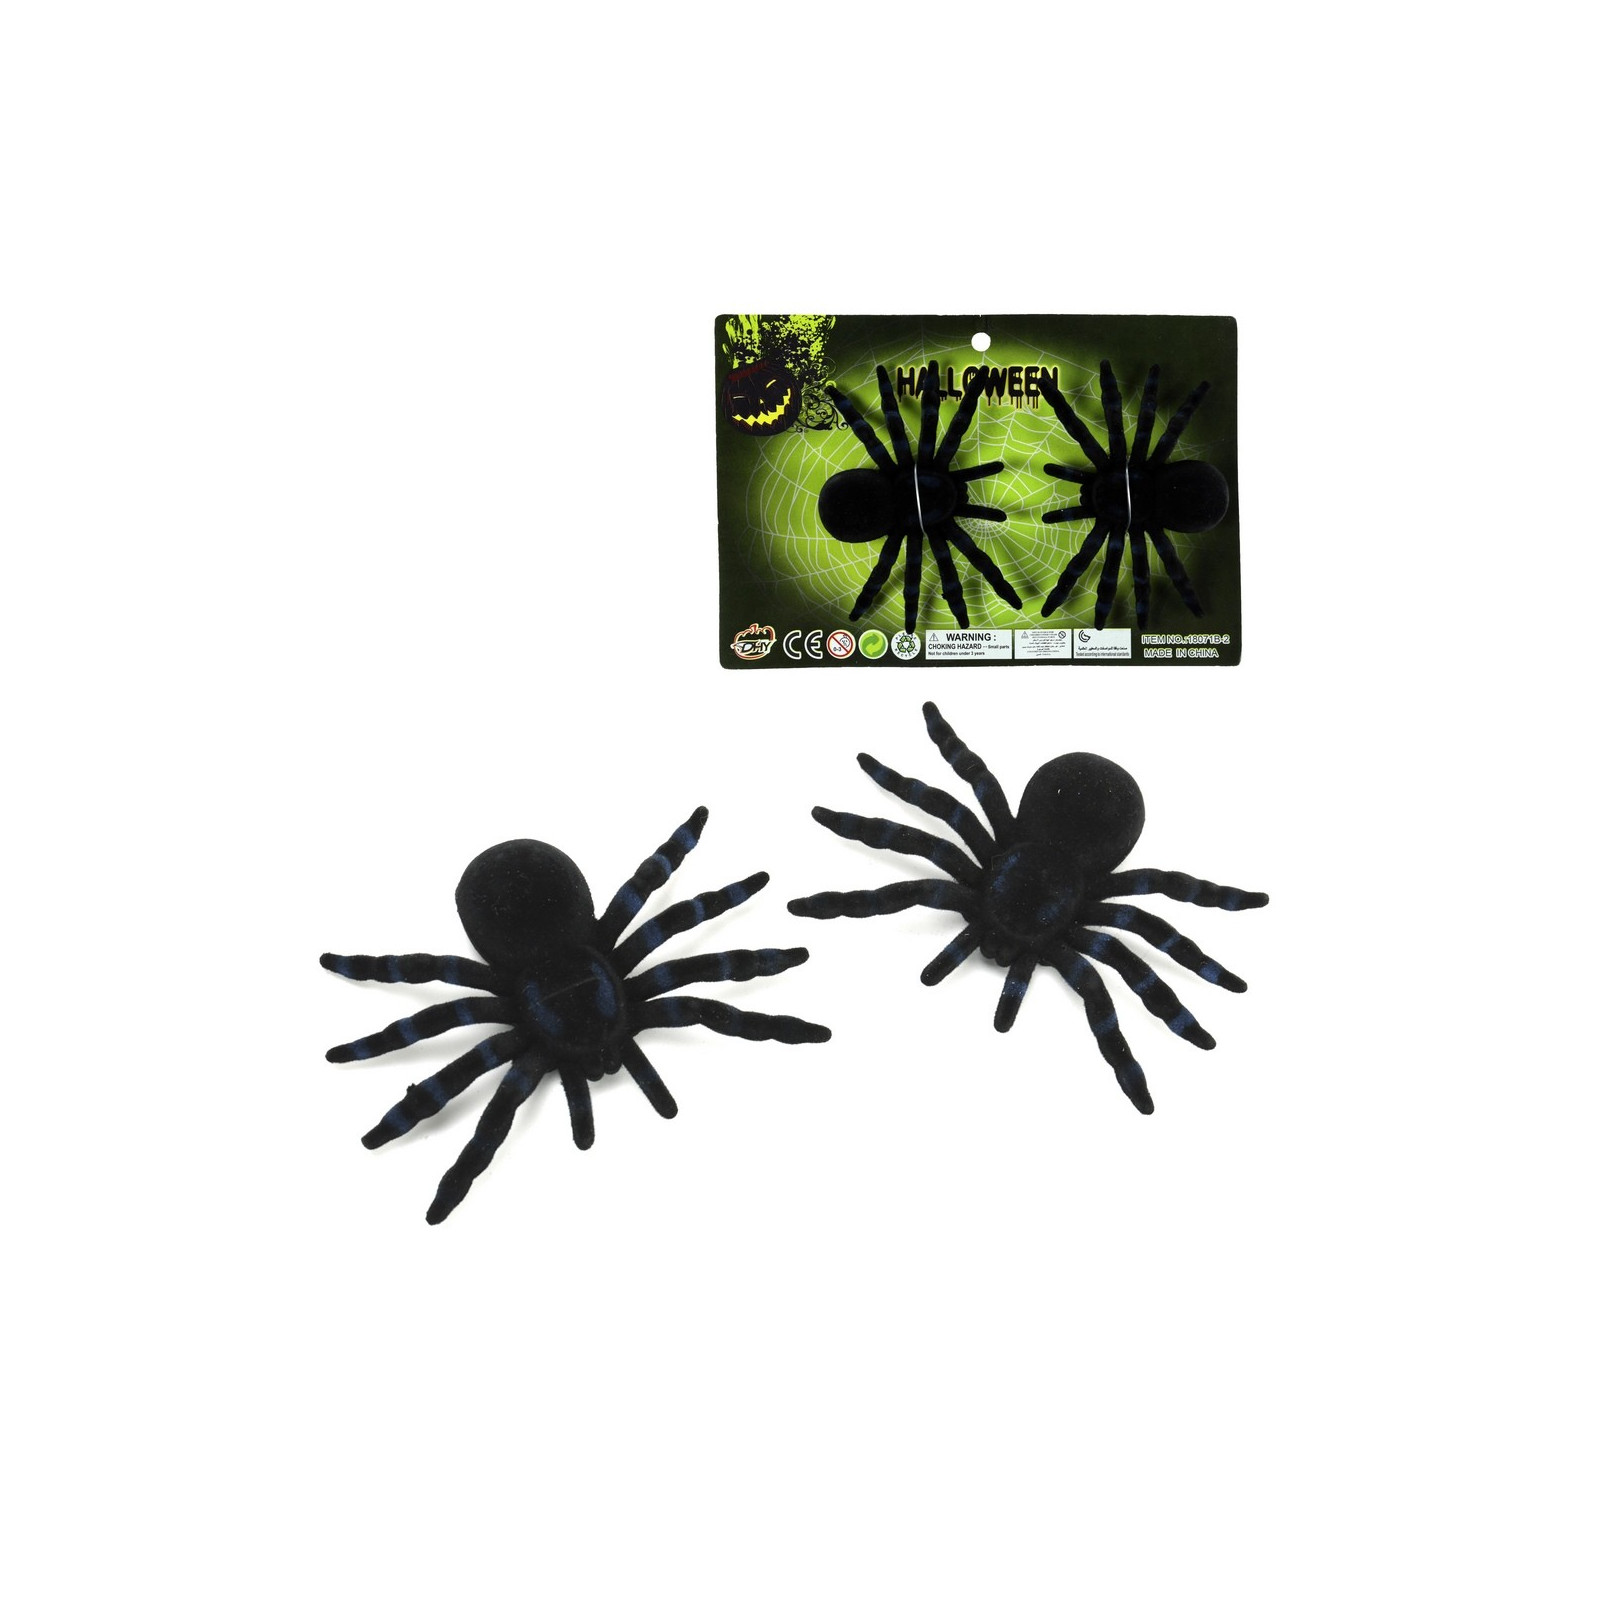 S 2 aranha de plástico preto flocado de 10 x 7 cm